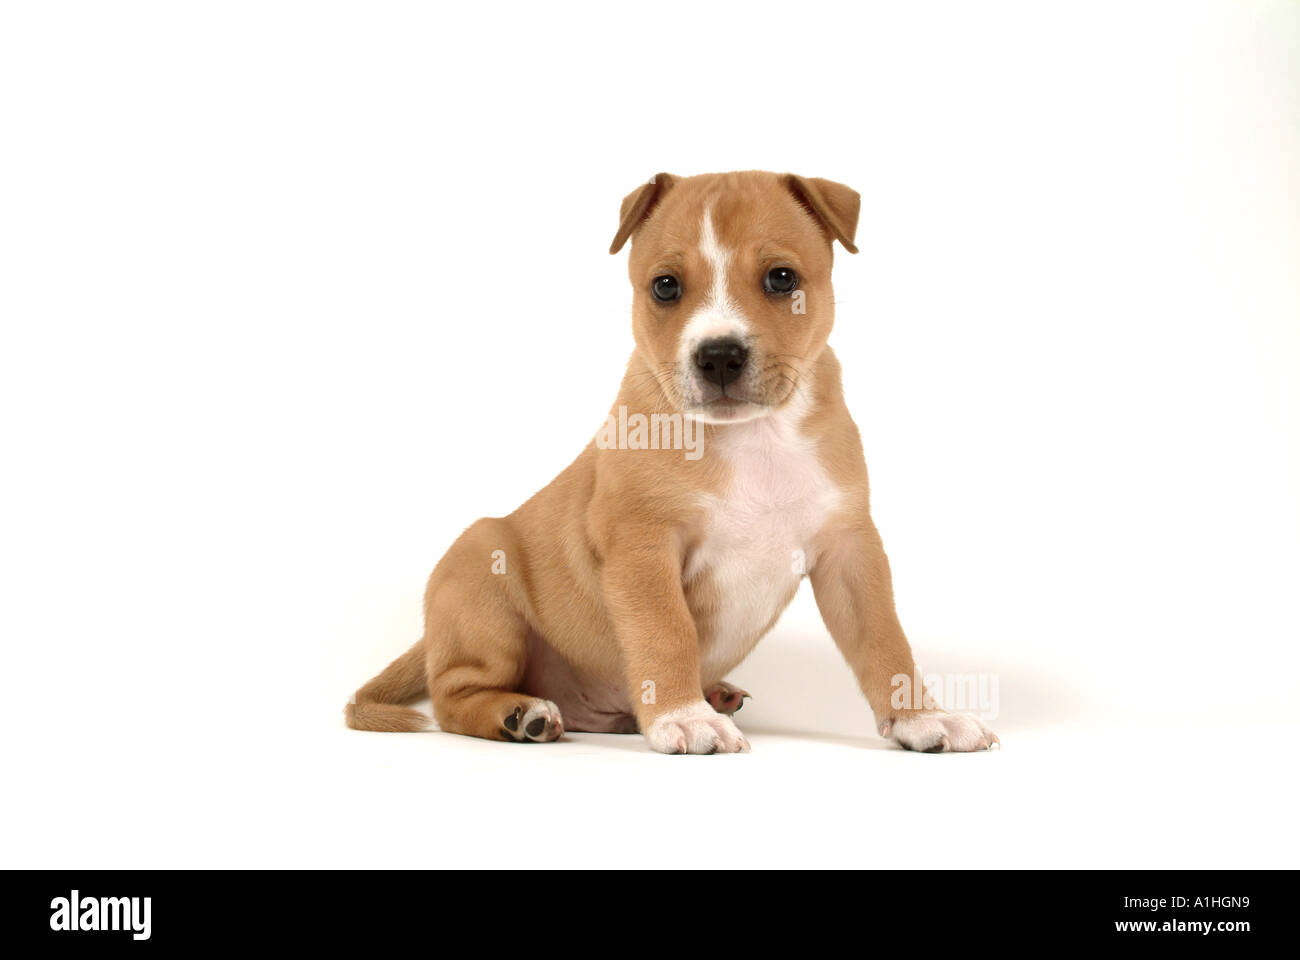 pitbull cross terrier